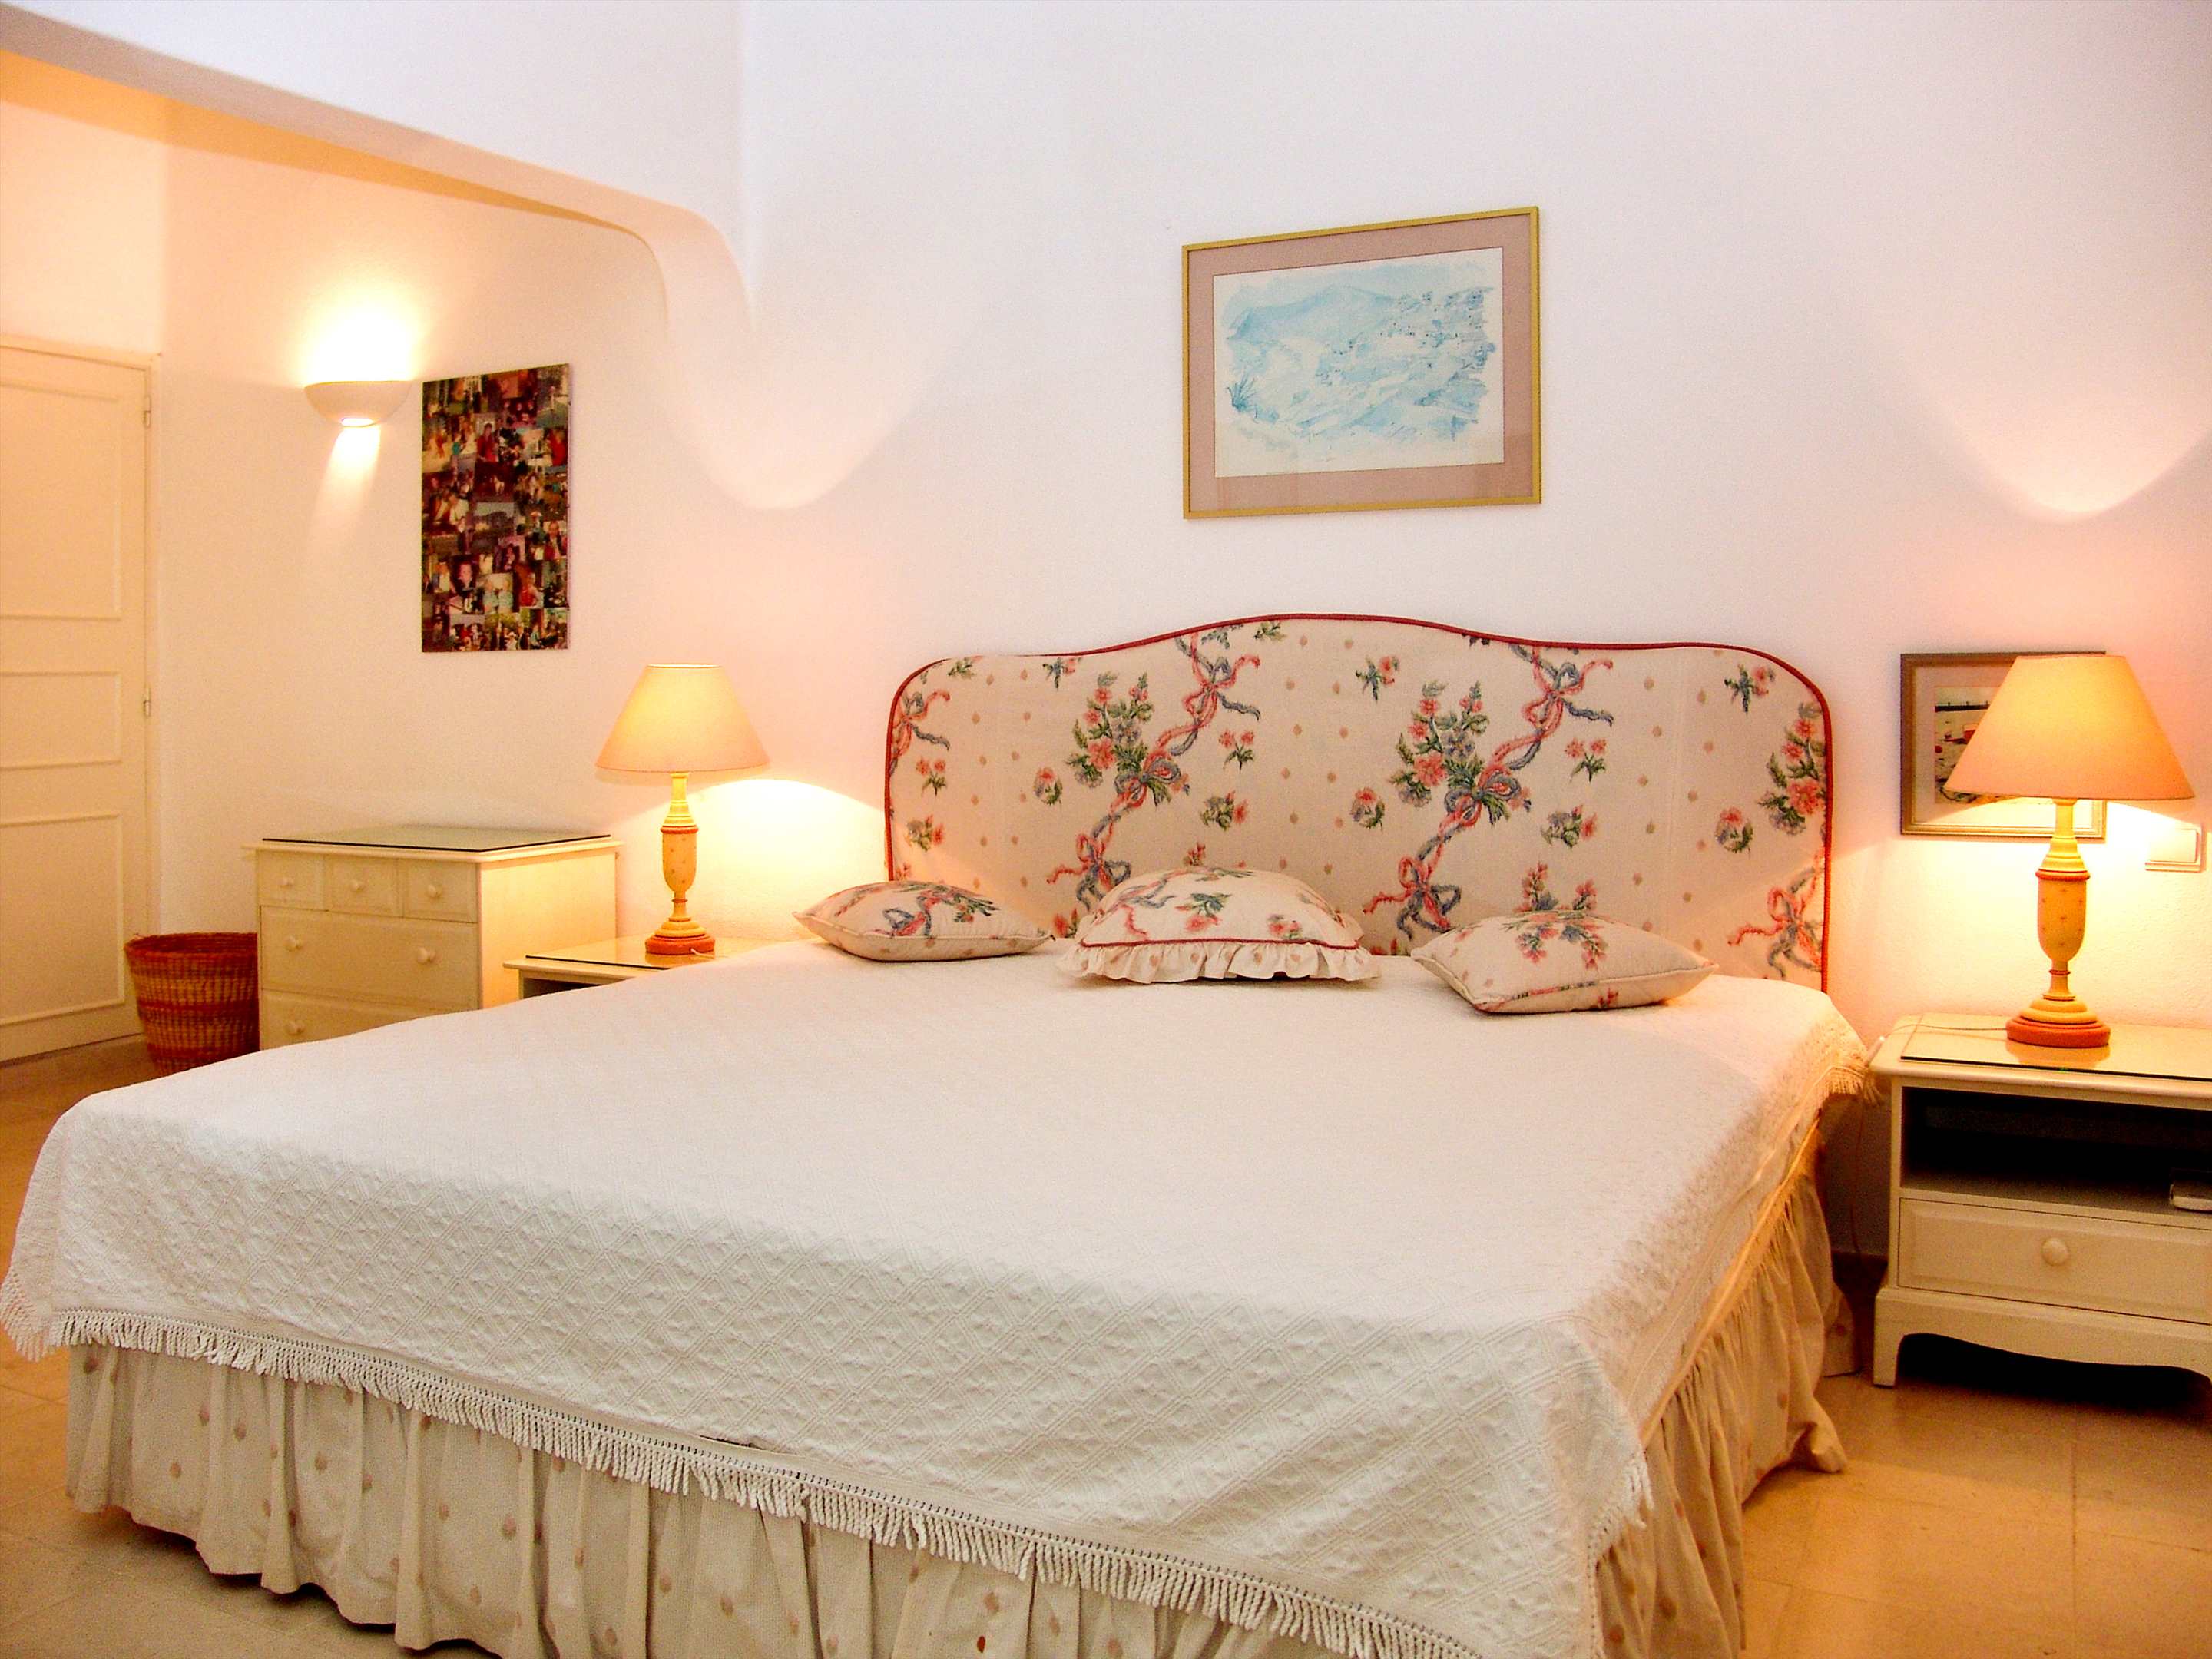 Villa Das Felicidades, 4 bedroom villa in Vale do Lobo, Algarve Photo #15